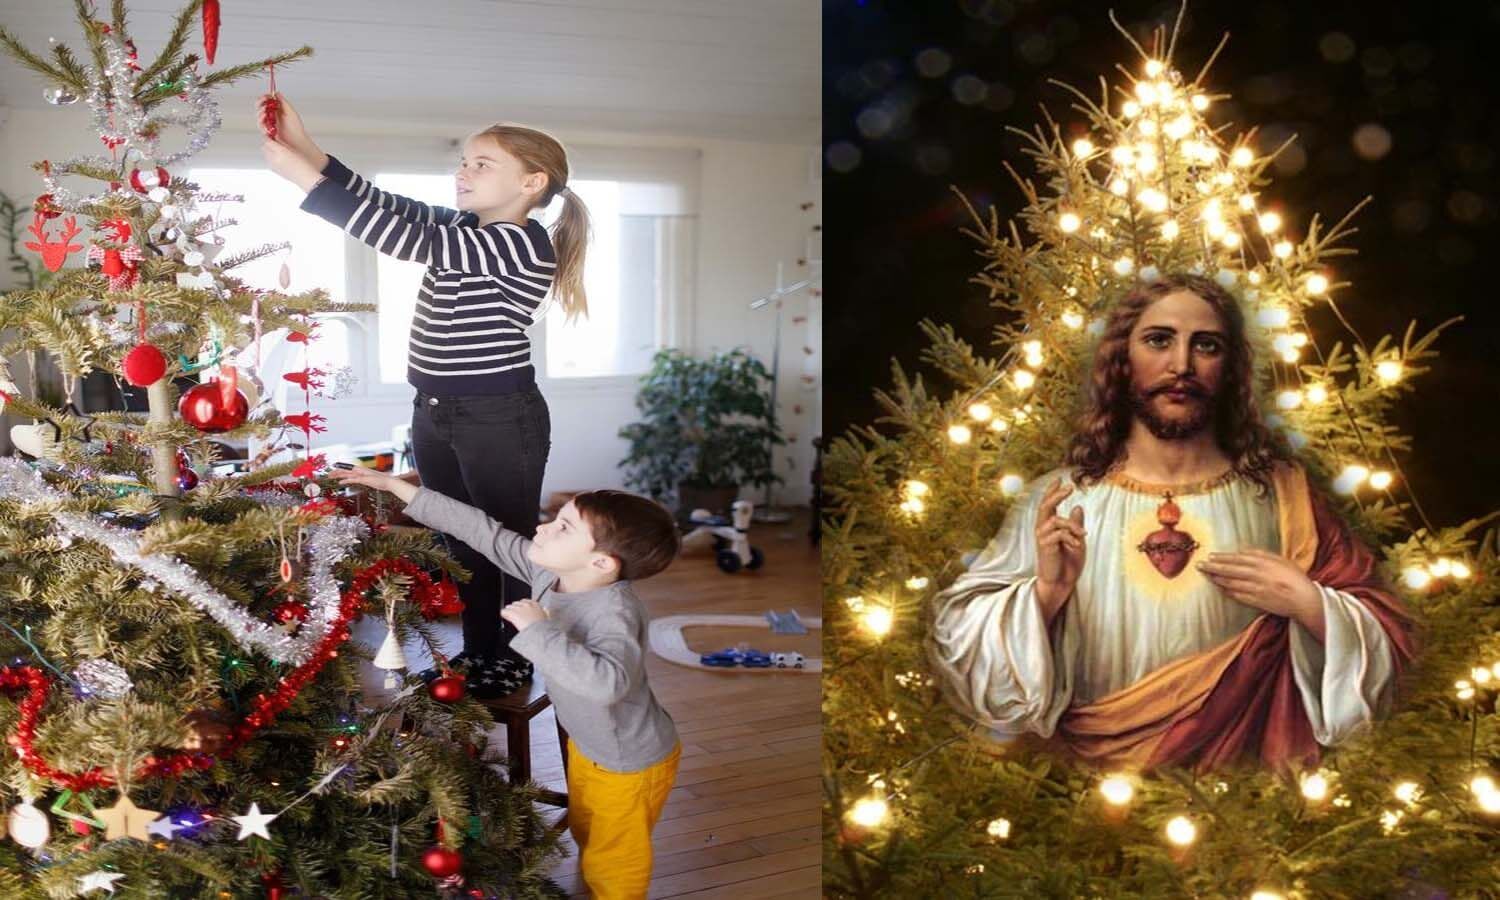 Christmas Tree and Jesus: Christmas tree has nothing to do with Jesus